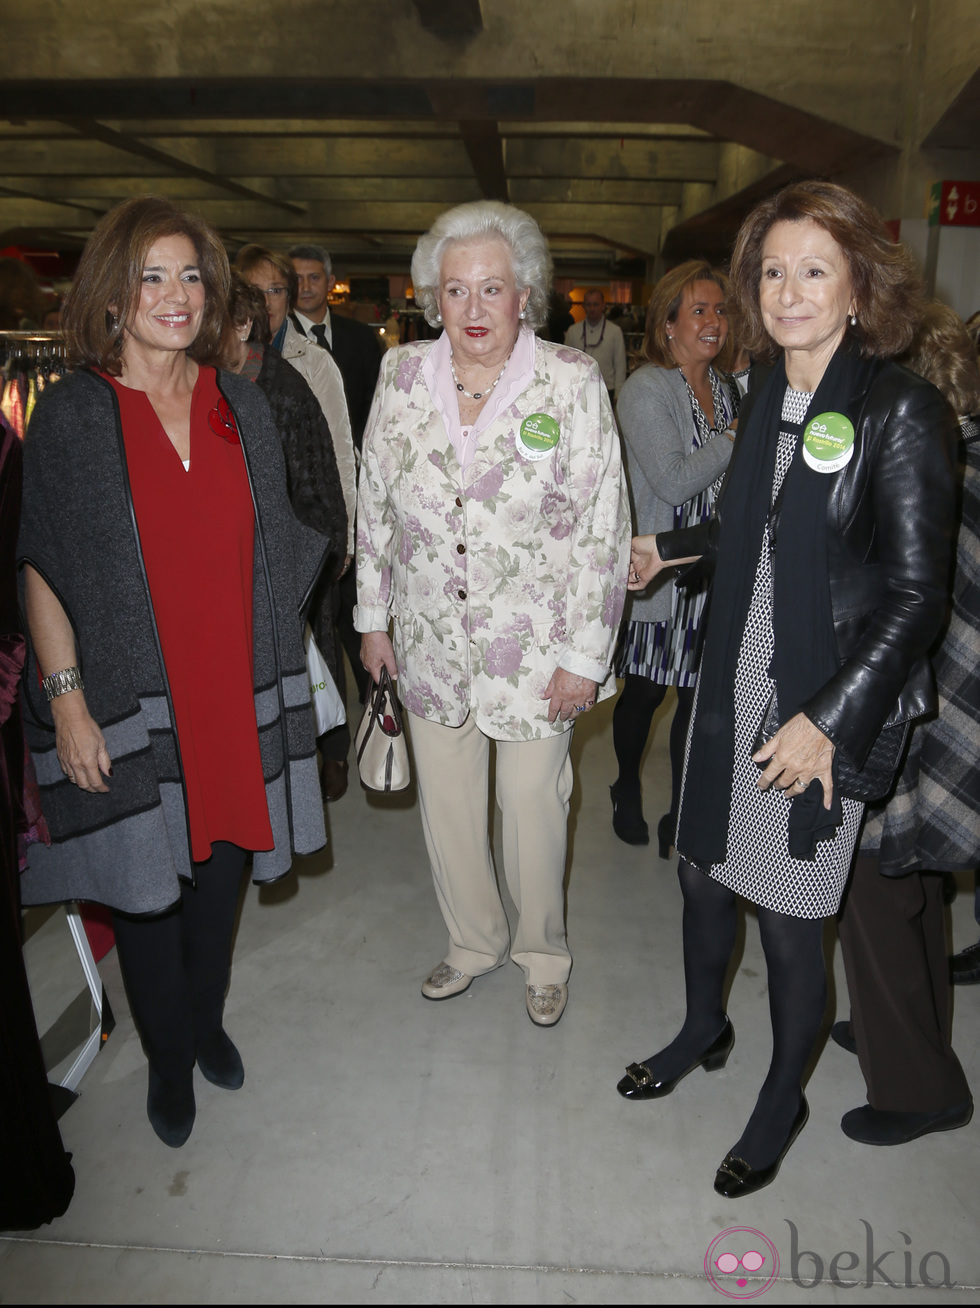 Ana Botella, la Infanta Pilar y Pina Sánchez Errázuriz en la inauguración del Rastrillo Nuevo Futuro